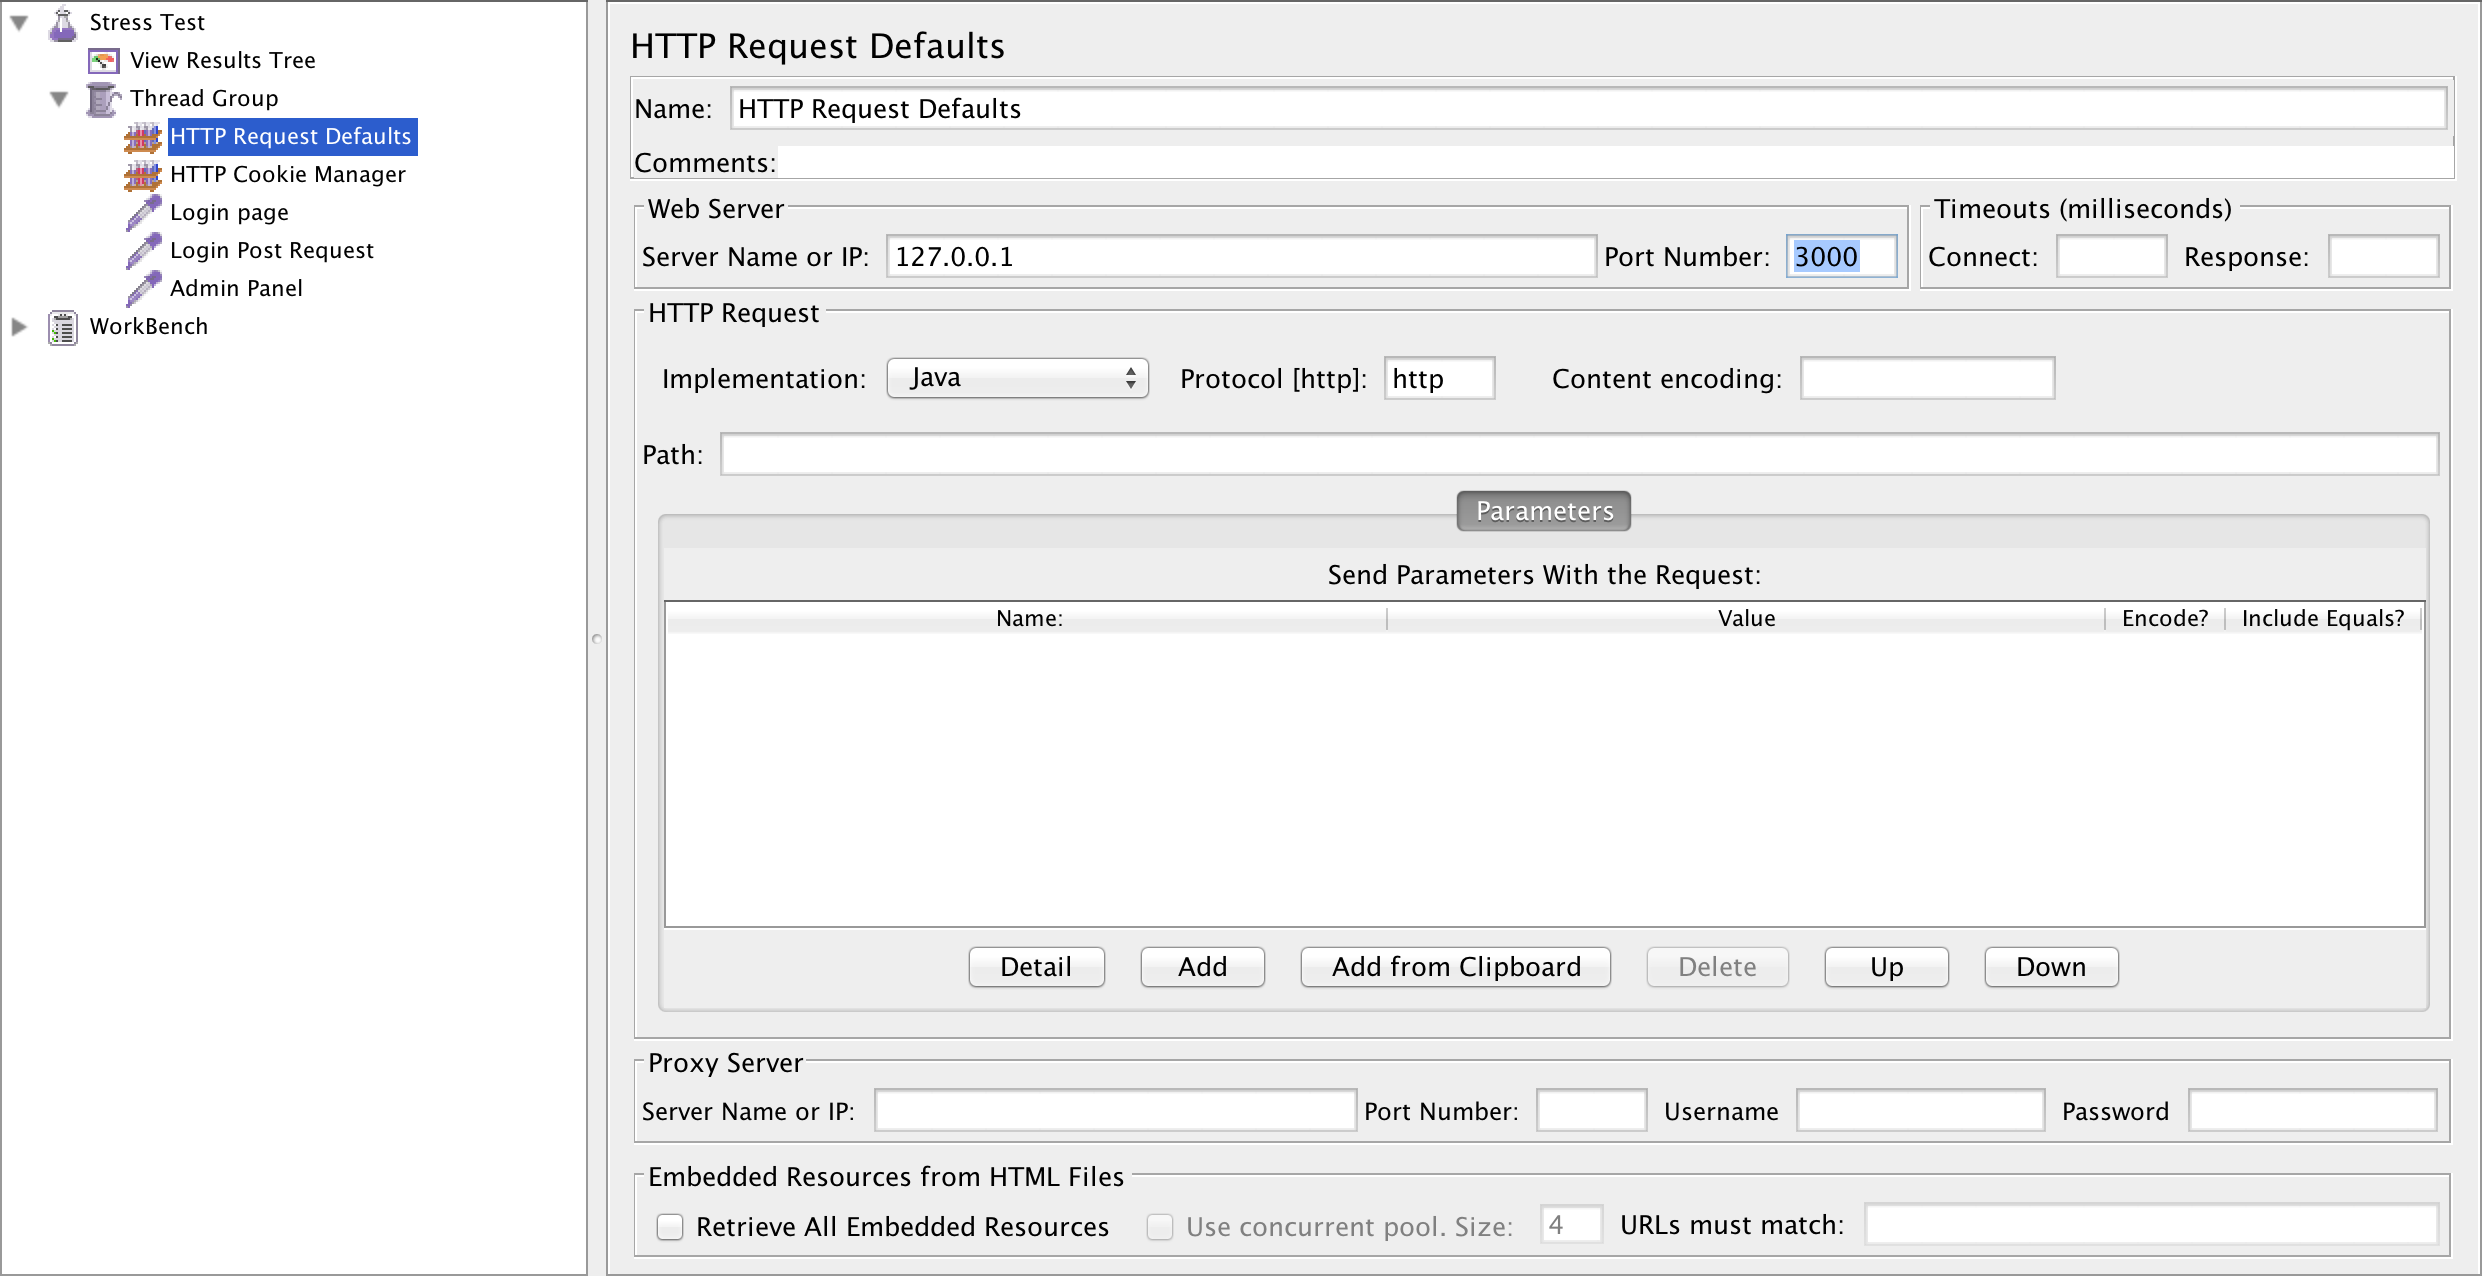 "Screenshot of HTTP Request Defaults"